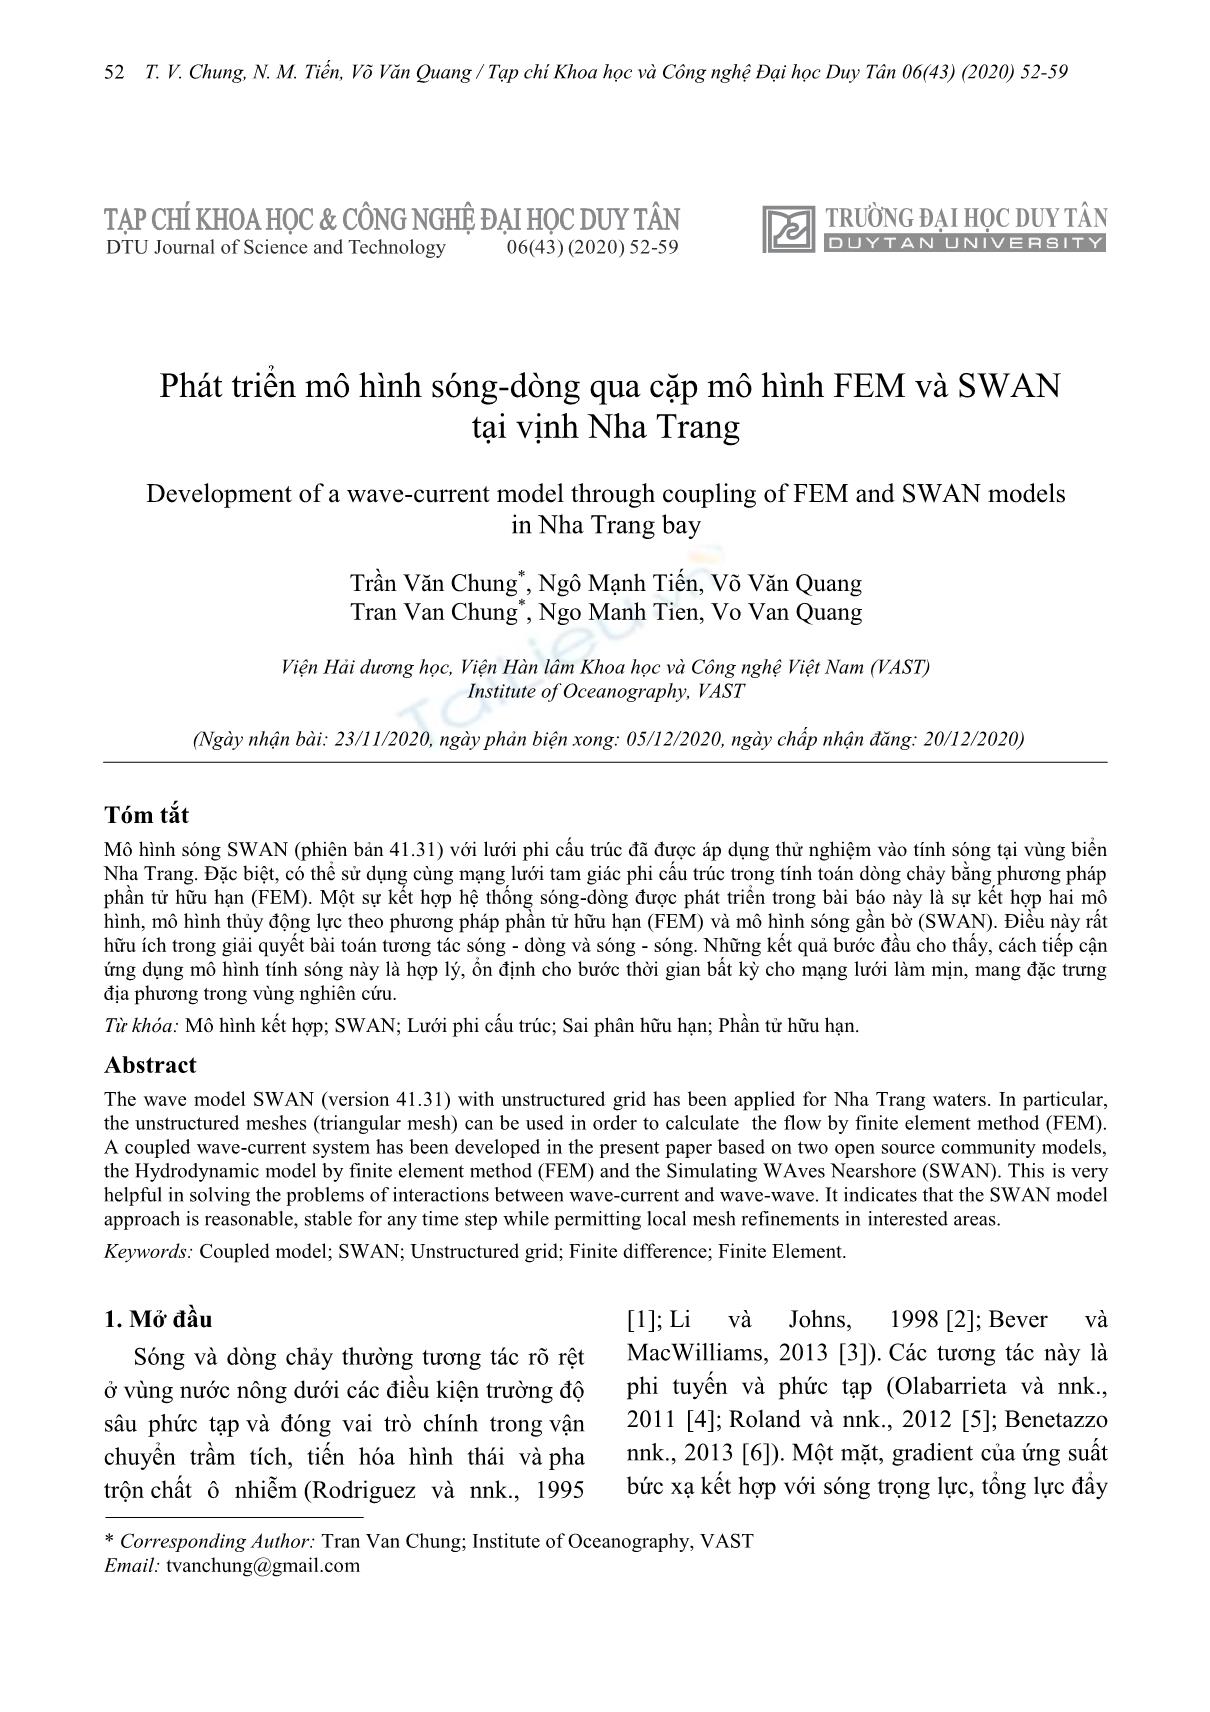 Phát triển mô hình sóng-dòng qua cặp mô hình FEM và SWAN tại vịnh Nha Trang trang 1